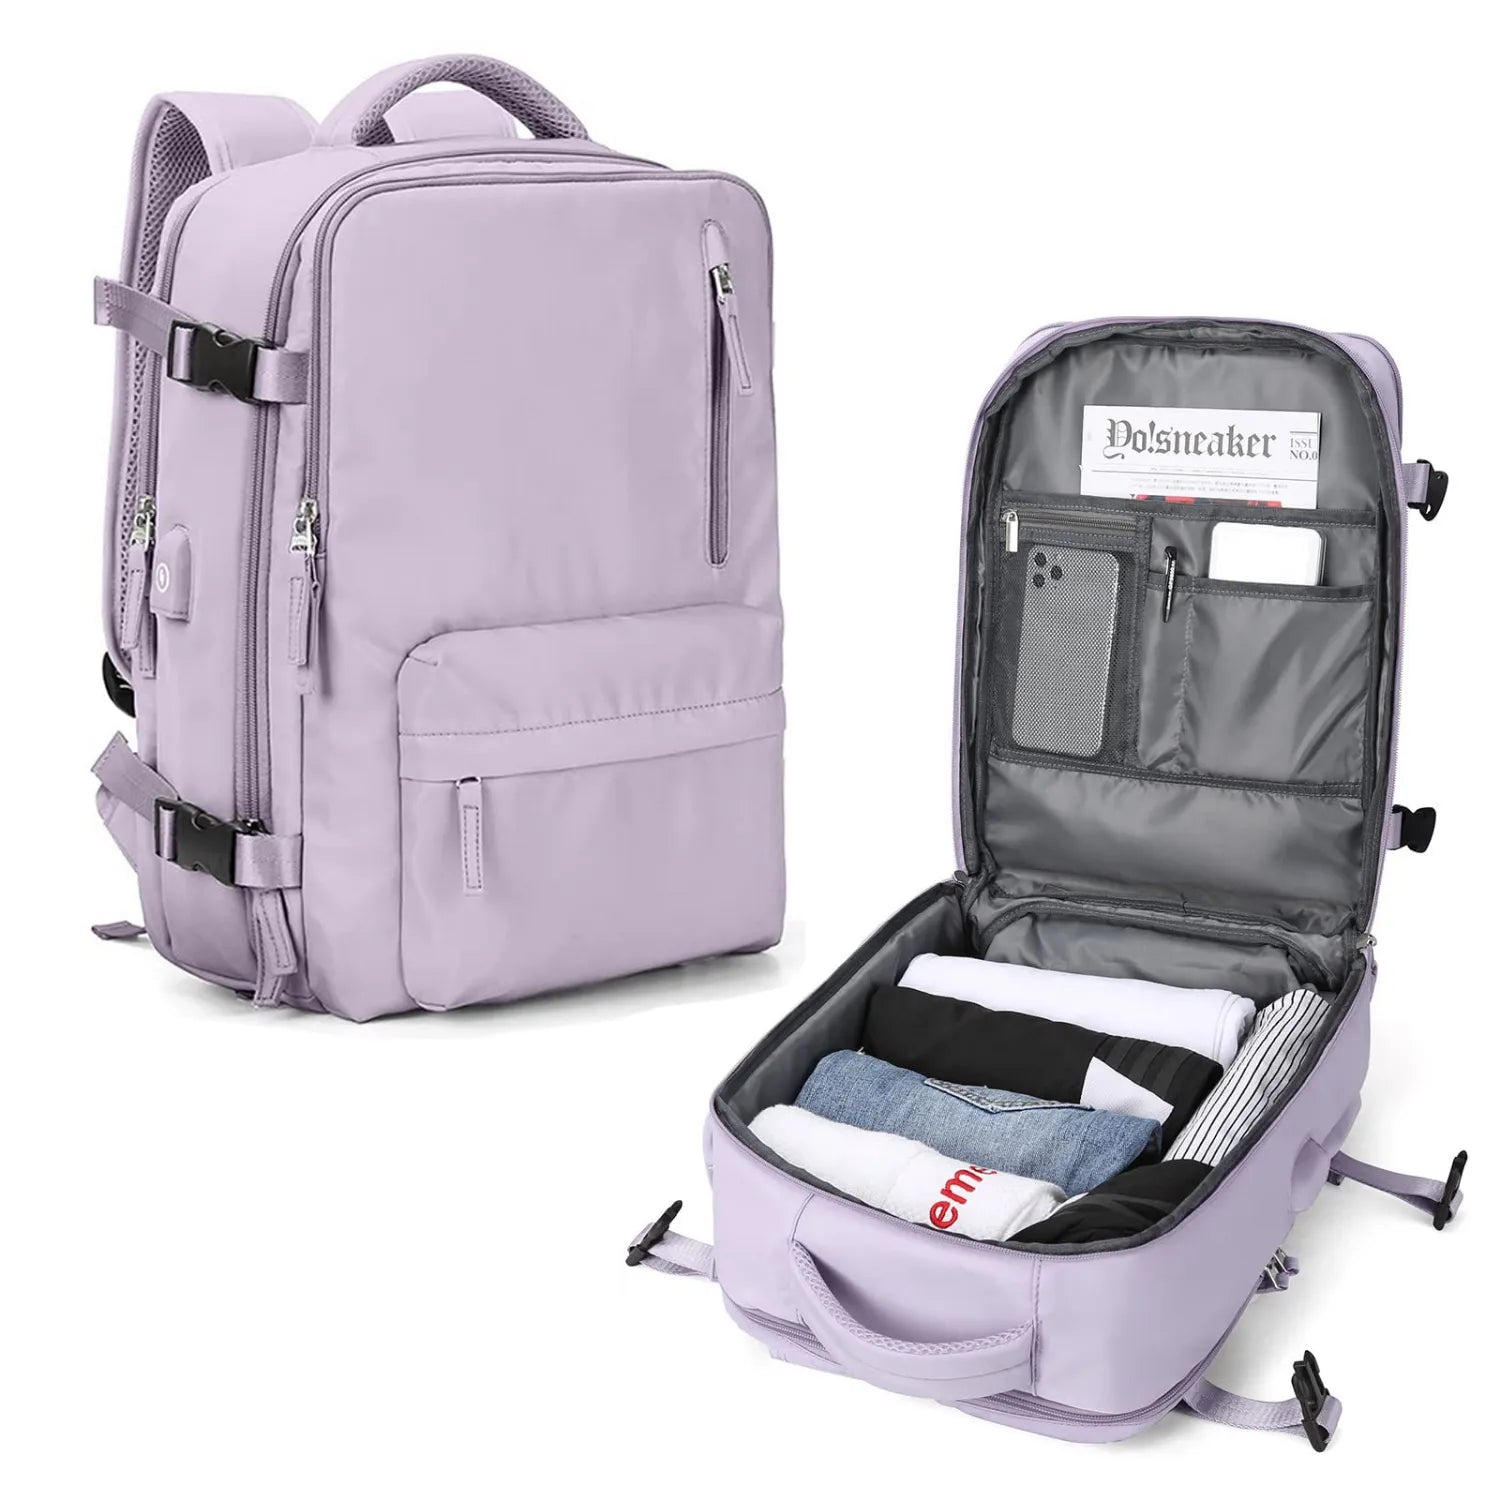 𝐀𝐧𝐚 𝐑𝐢𝐜𝐨 on Instagram: ¡La mochila de viaje más viral de TikTok  está en @diunsa ! 🫨 Todos los que amamos viajar, la estamos amando aún  más. Disponible en color rosado y